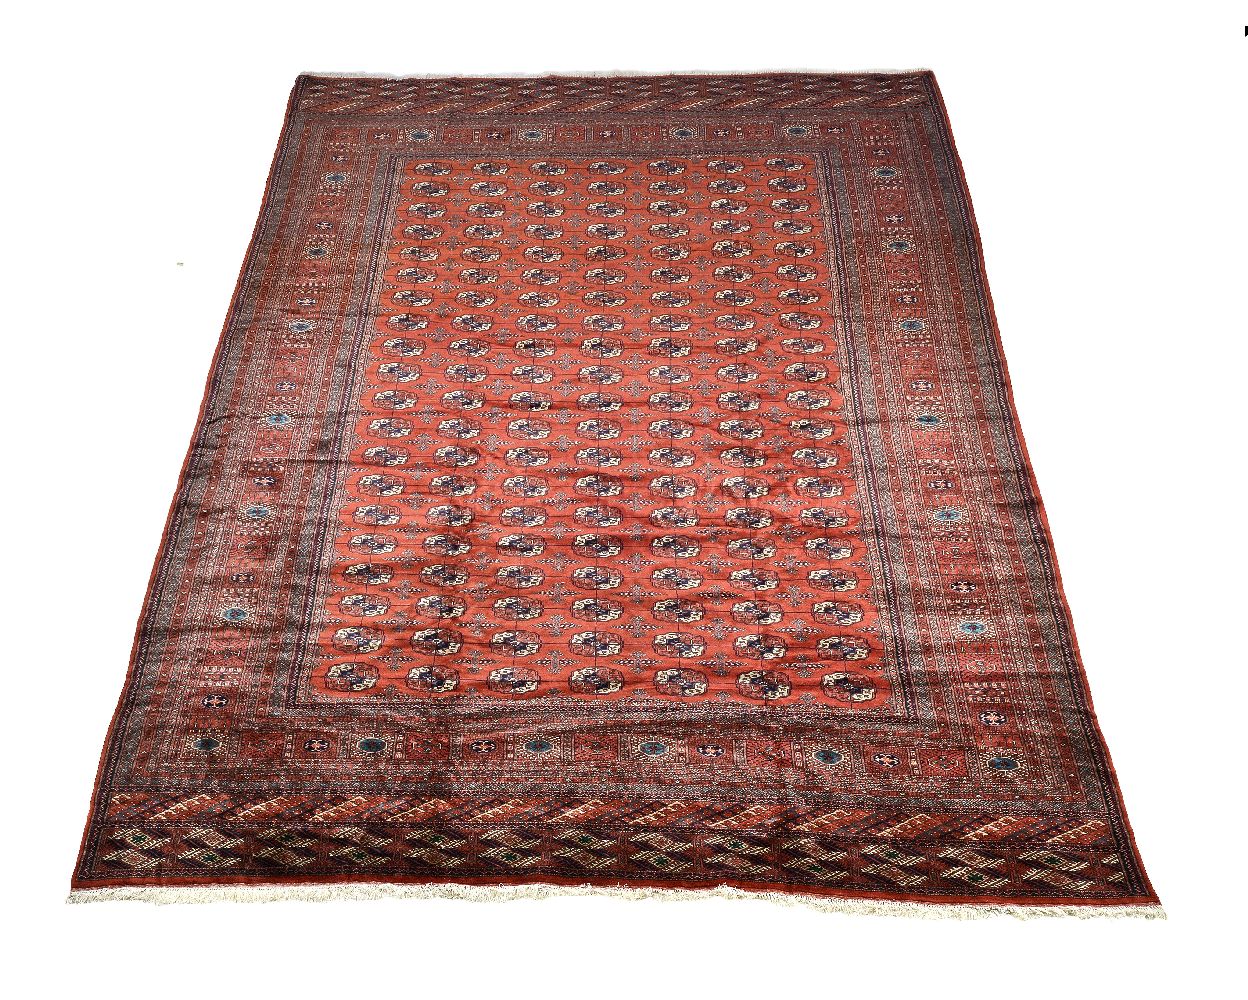 A Bokhara carpet